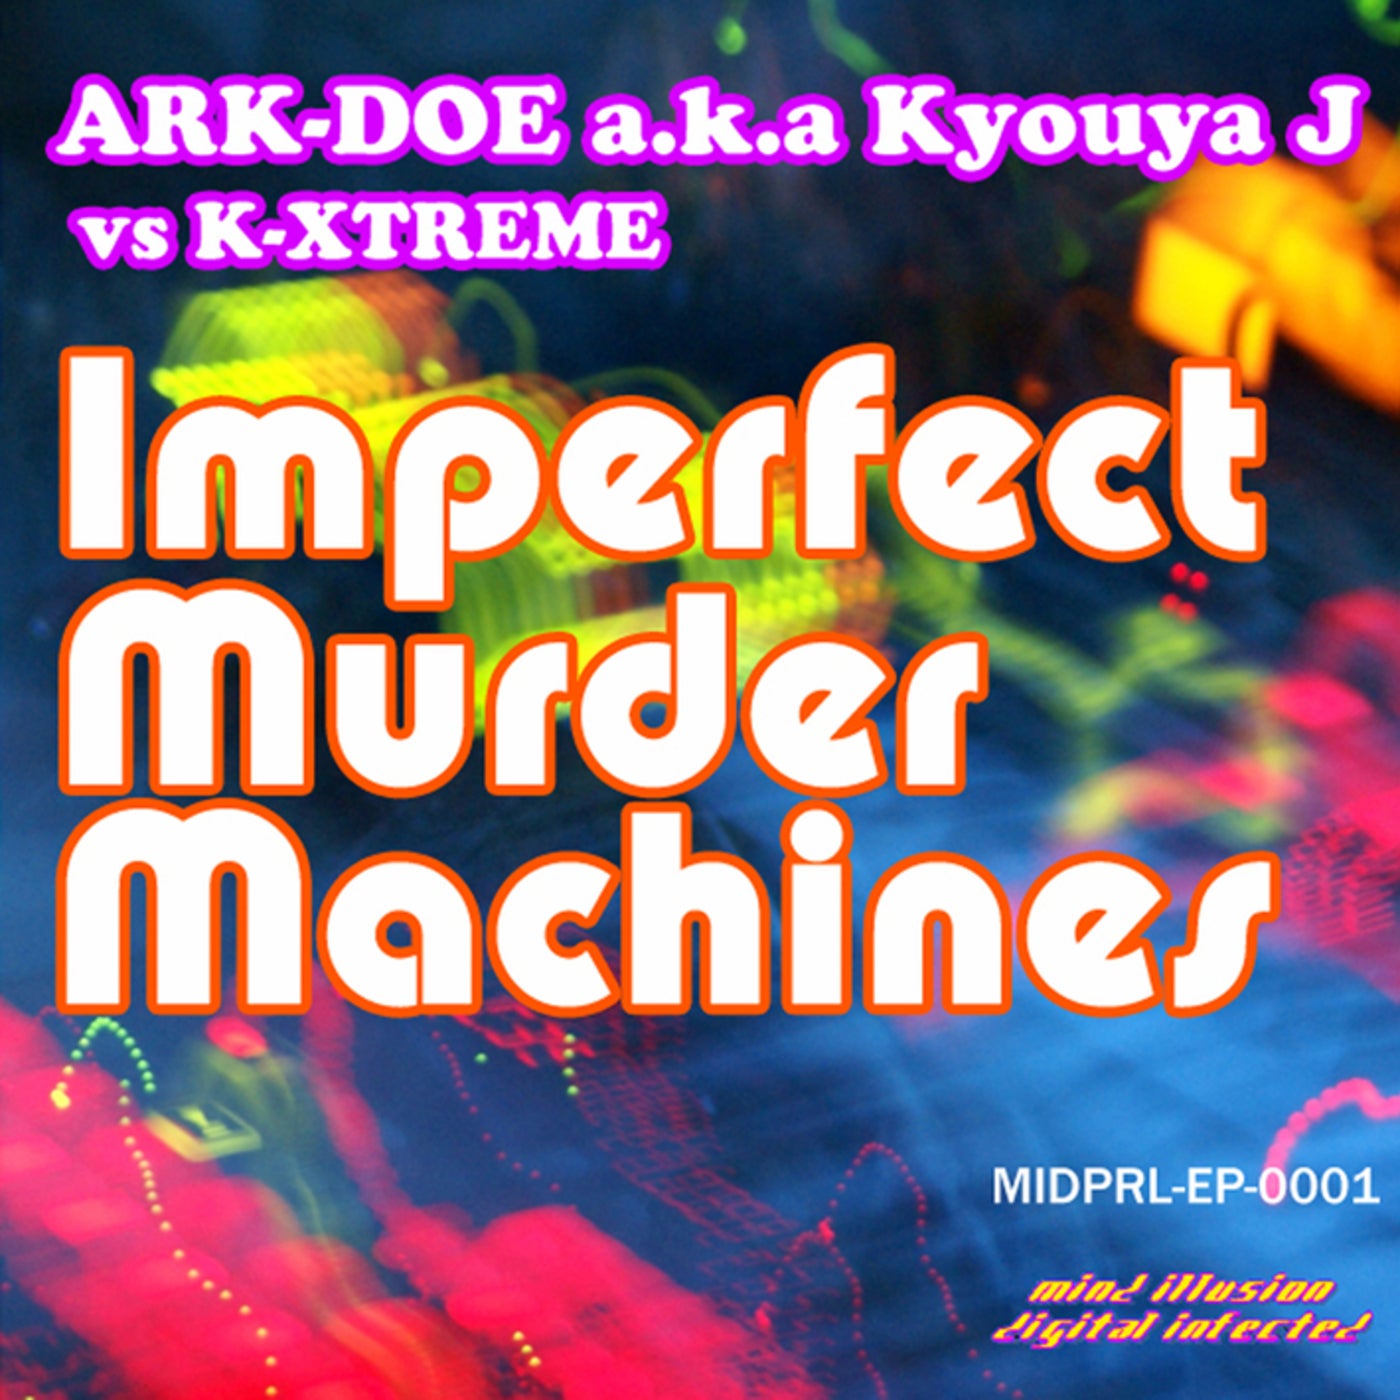 Imperfect Murder Machines